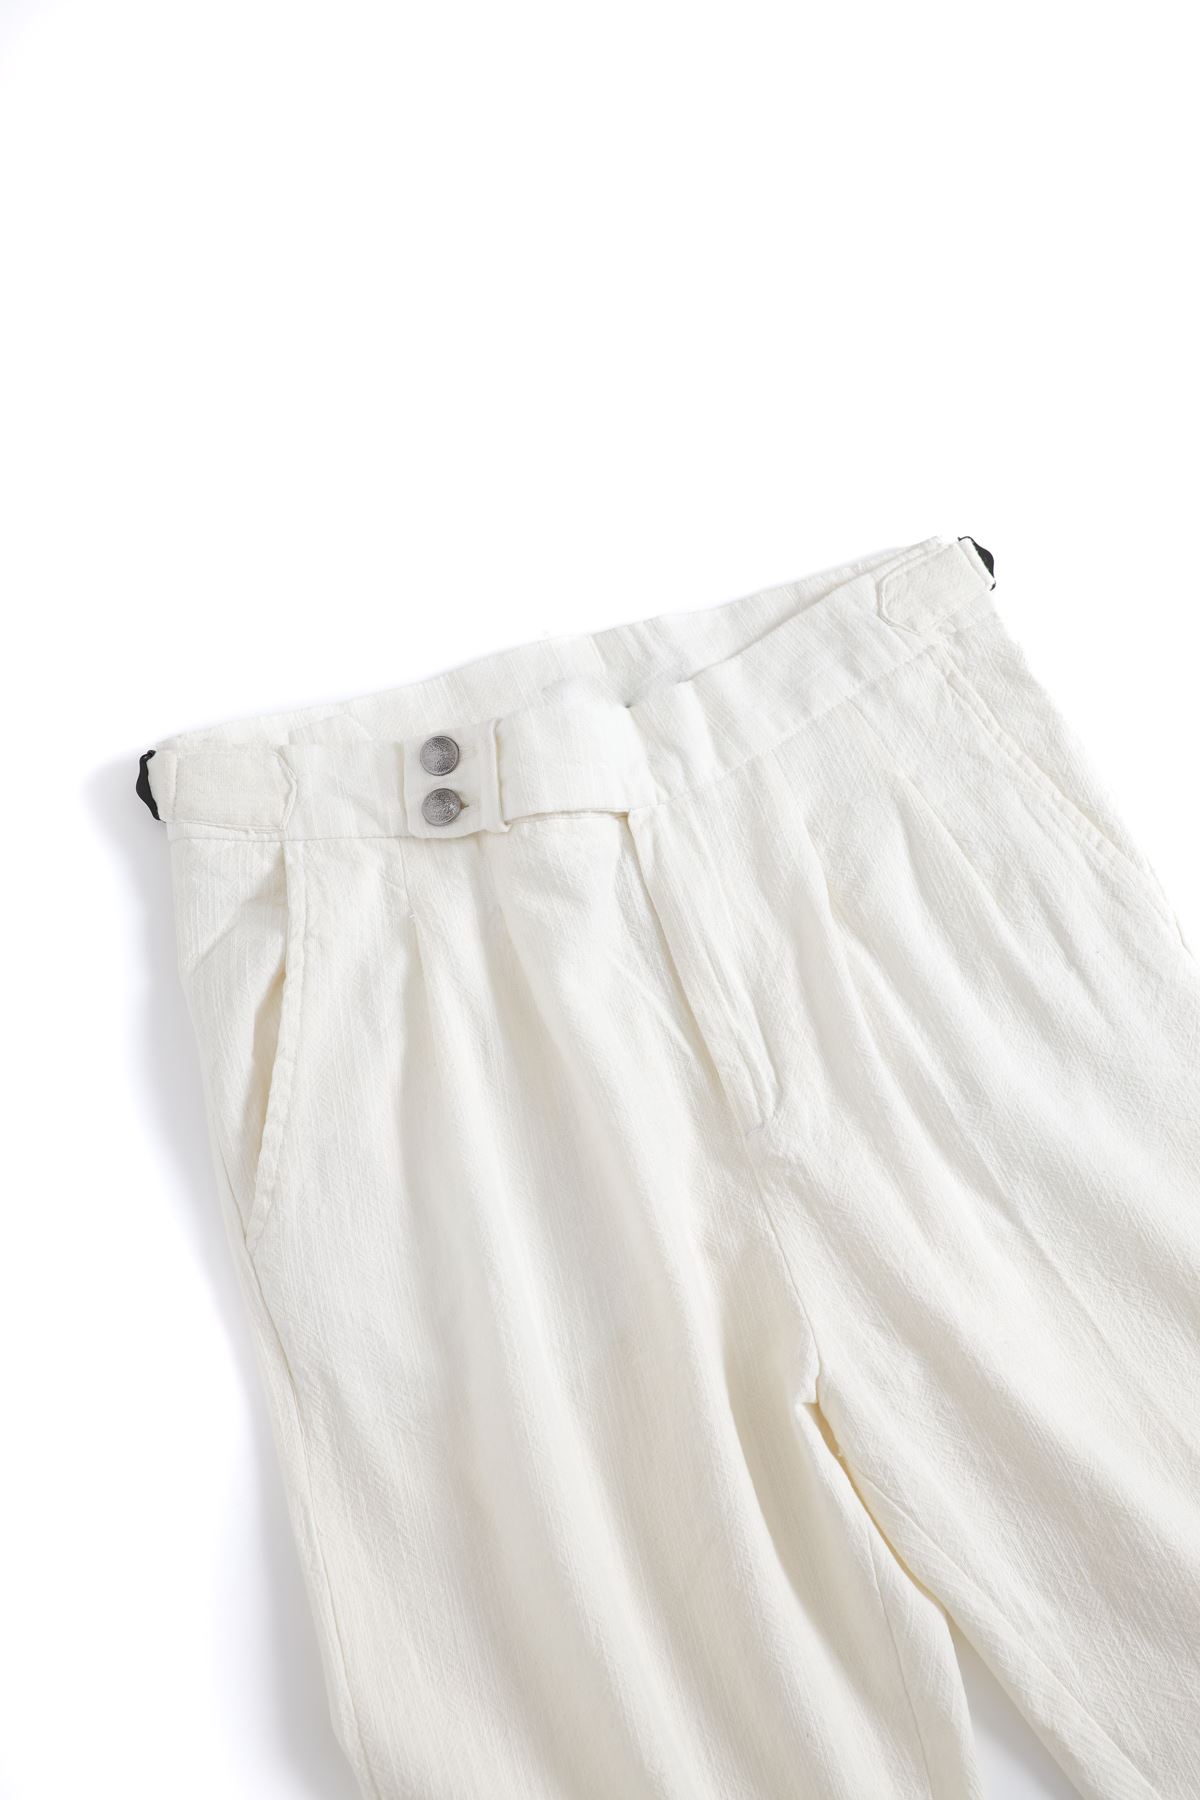 Lyon Beyaz Pantolon